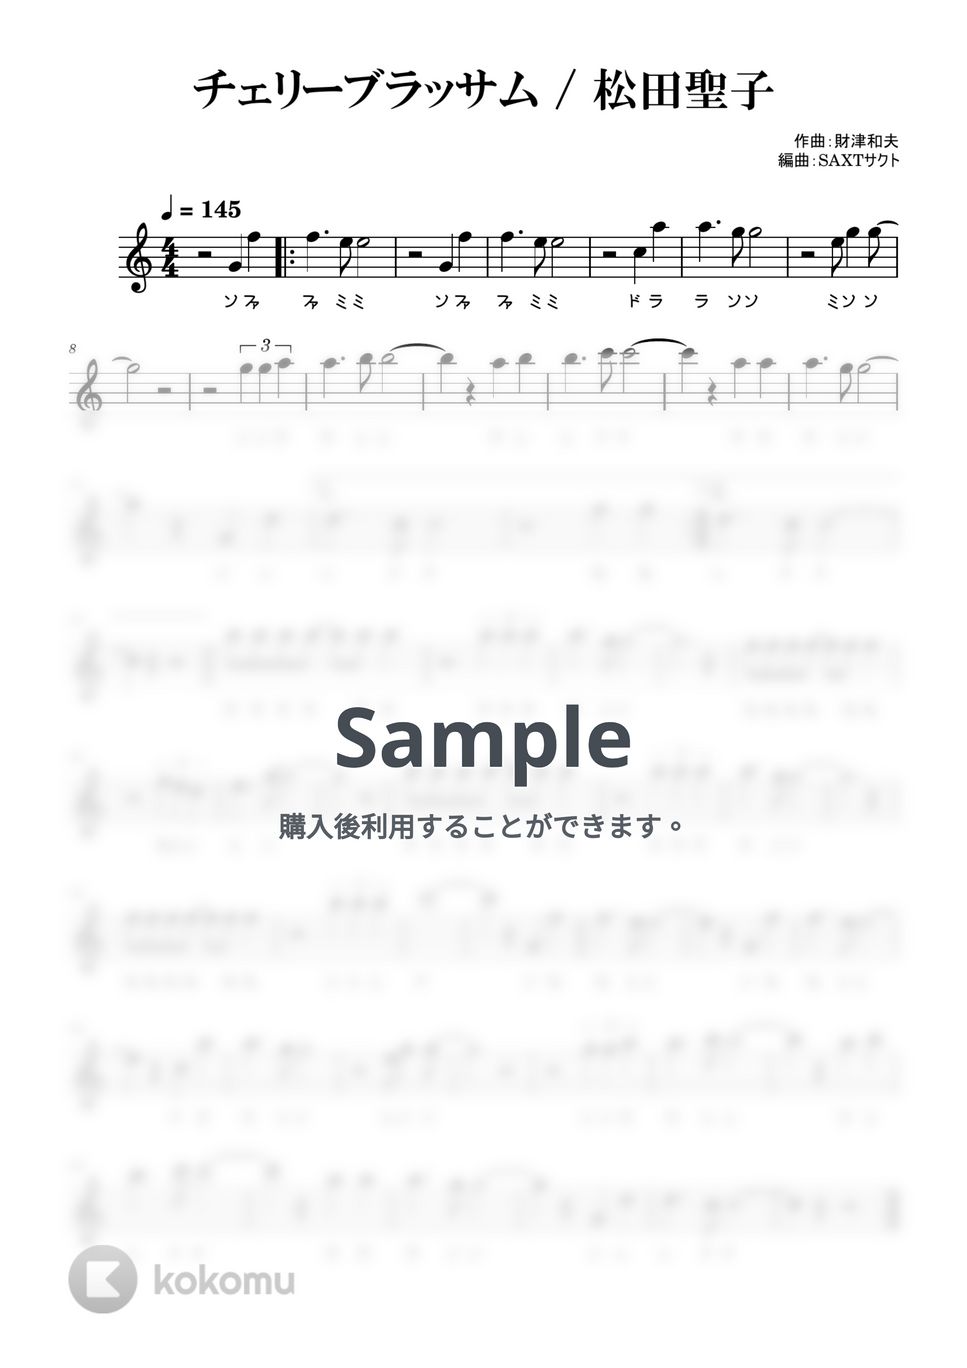 松田聖子 - チェリーブラッサム (めちゃラク譜・ドレミあり) by SAXT